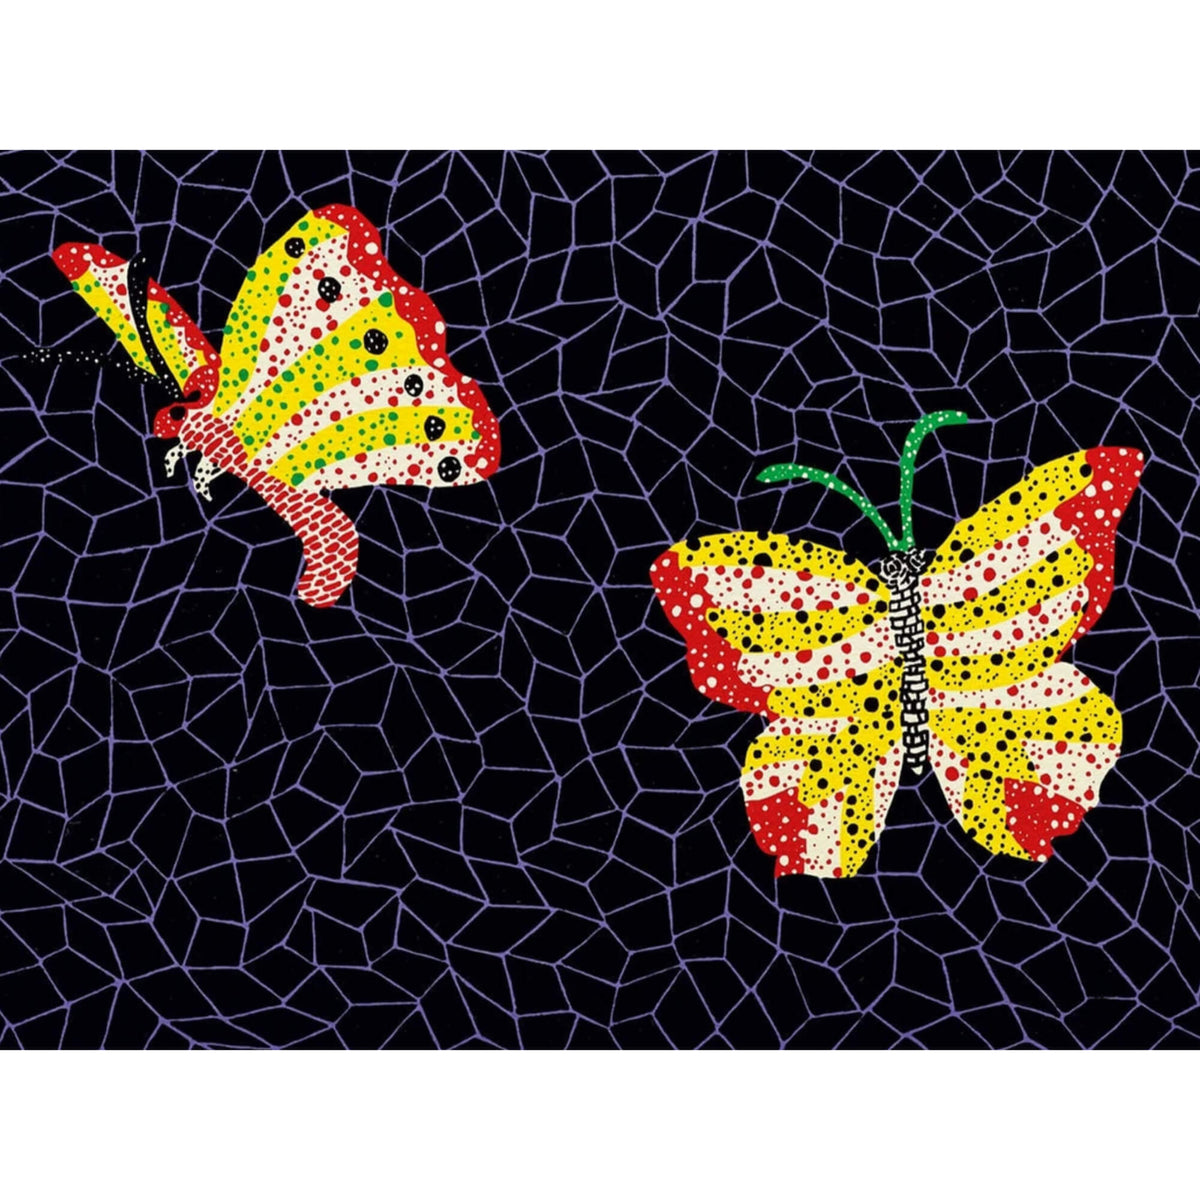 Butterfly Butterfly / Key Ring-Yayoi Kusama - Shop yayoi-kusama